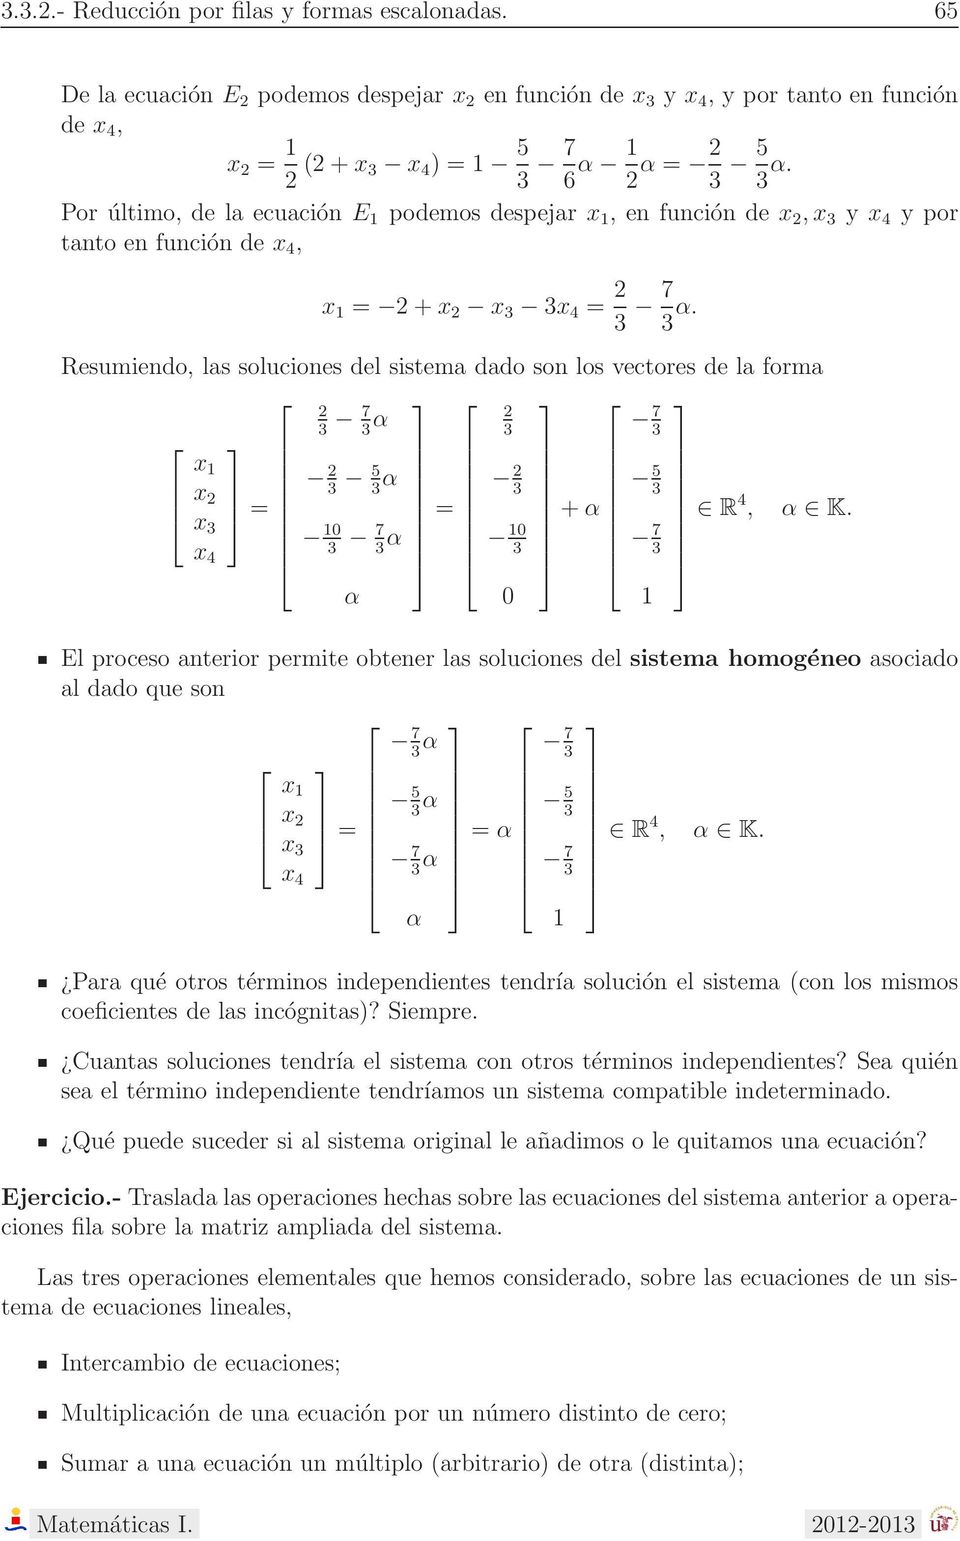 forma 7α 7 3 3 3 3 5α 3 3 3 7 α = 3 α 3 3 +α 5 3 7 3 R 4, α K El proceso anterior permite obtener las soluciones del sistema homogéneo asociado al dado que son 7 α 7 3 3 x x x 3 = 5 3 α 5 3 x 4 7 3 α